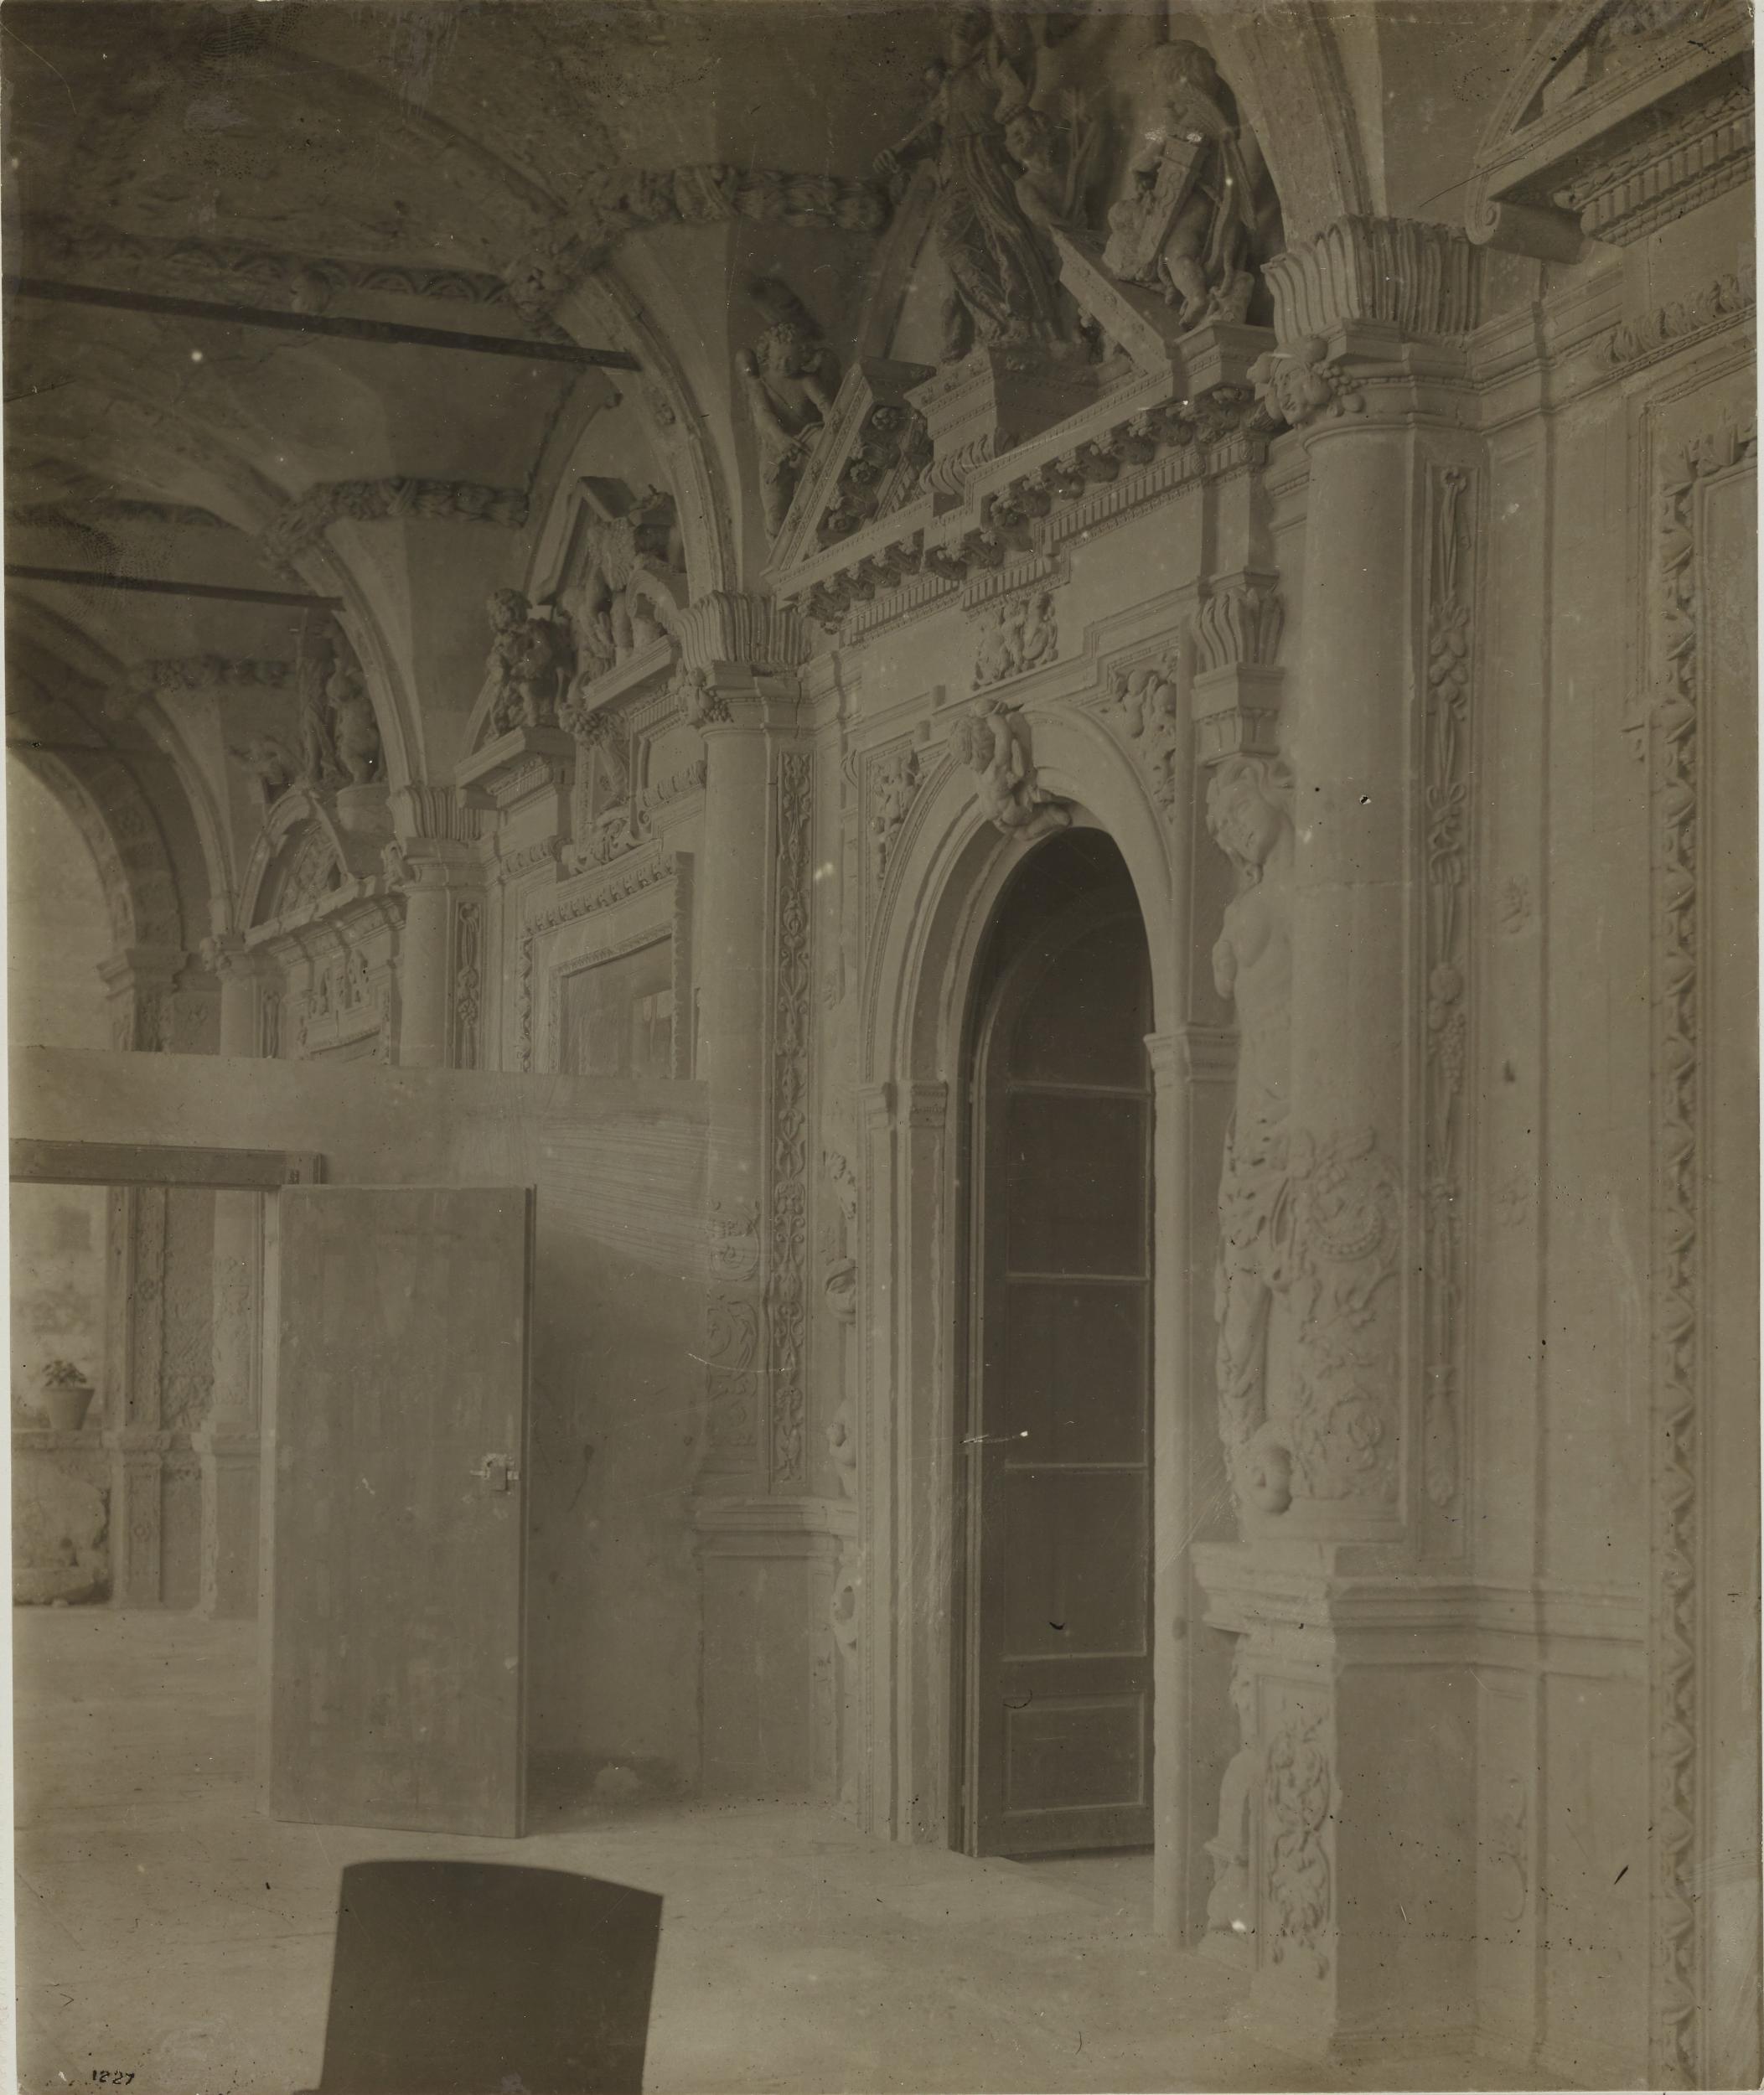 Fotografo non identificato, Barletta - Palazzo Montalto della Marra, la loggia, lavori di sistemazione, 1901-1925, gelatina ai sali d'argento/carta, MPI152544